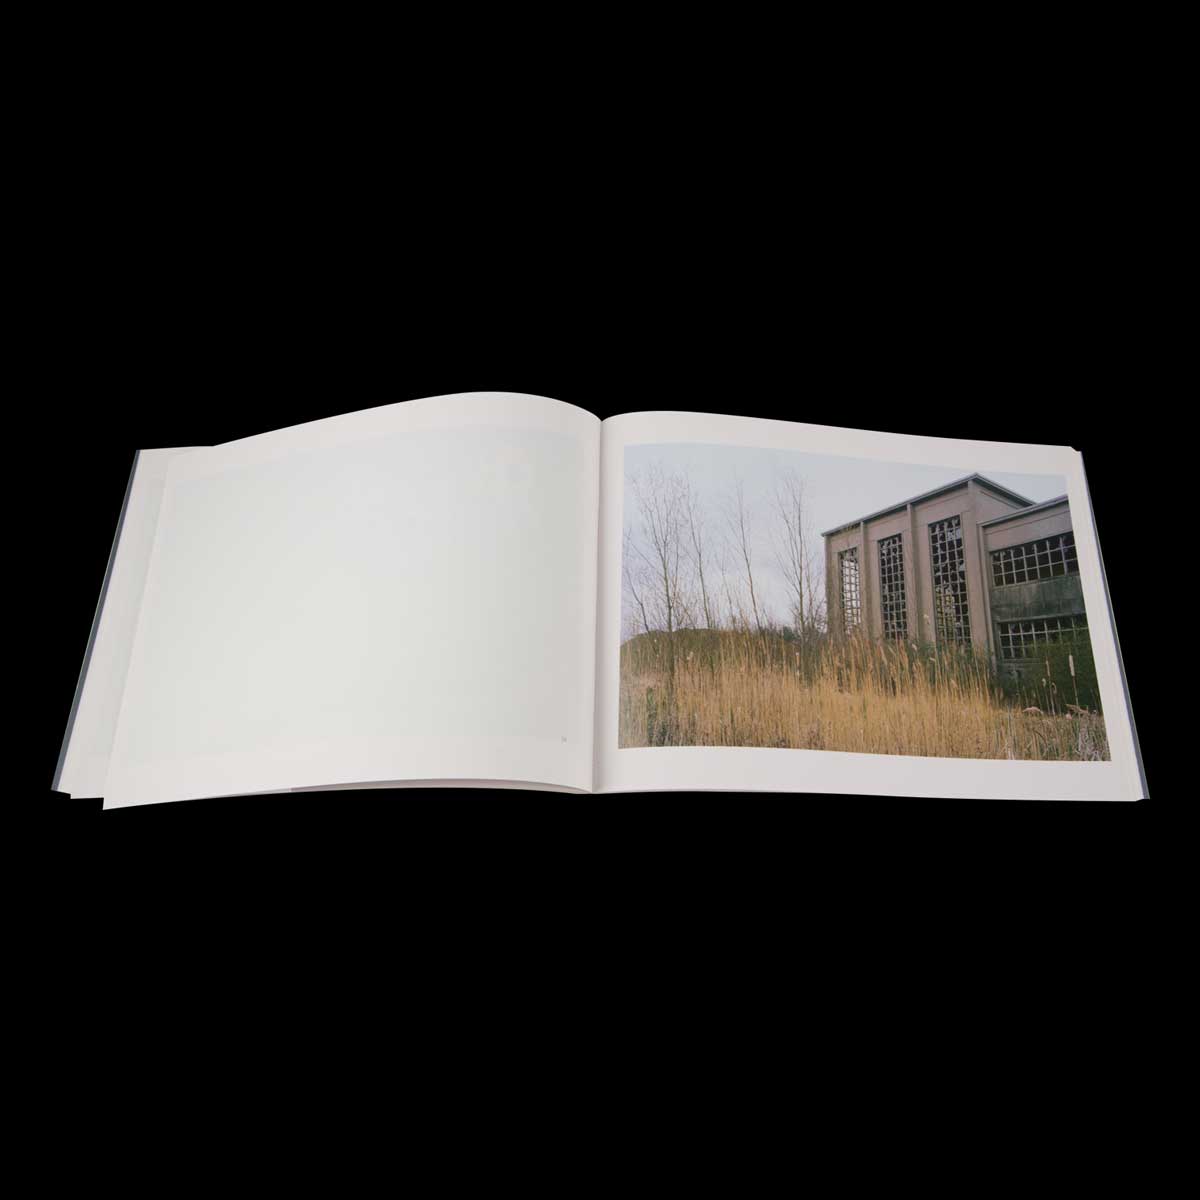 Autour/Around, Photographies de Benoît Fougeirol, poèmes de Michaël Batalla, tiré à 1000 exemplaires, édition VMCF, Keanu Reeves.